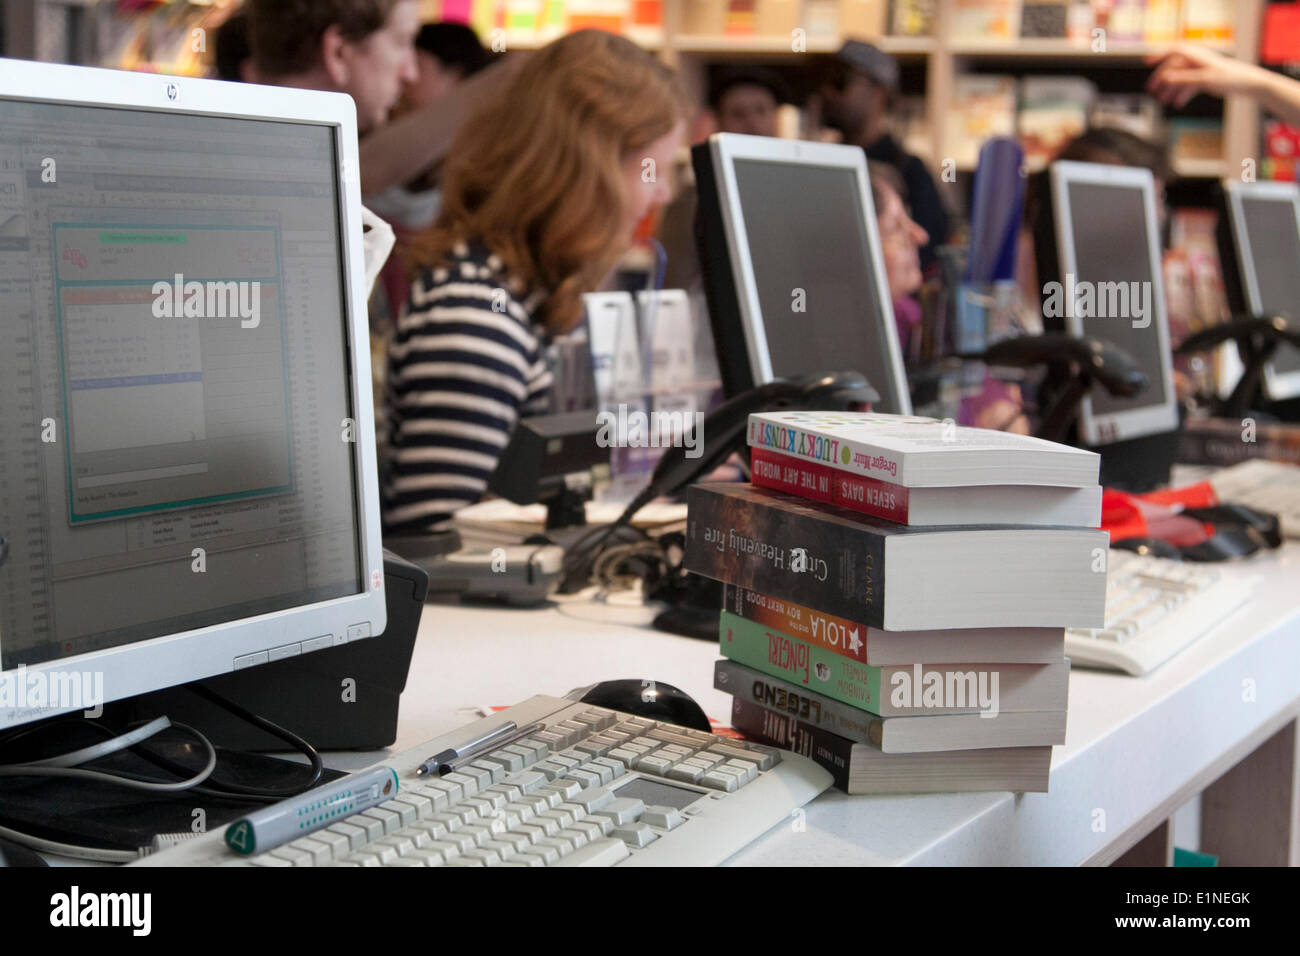 London UK. 7 juin 2014. Une pile de livres à côté d'un tiroir-caisse à la nouvelle vedette Foyles book store qui a officiellement ouvert ses portes Crédit : amer ghazzal/Alamy Live News Banque D'Images